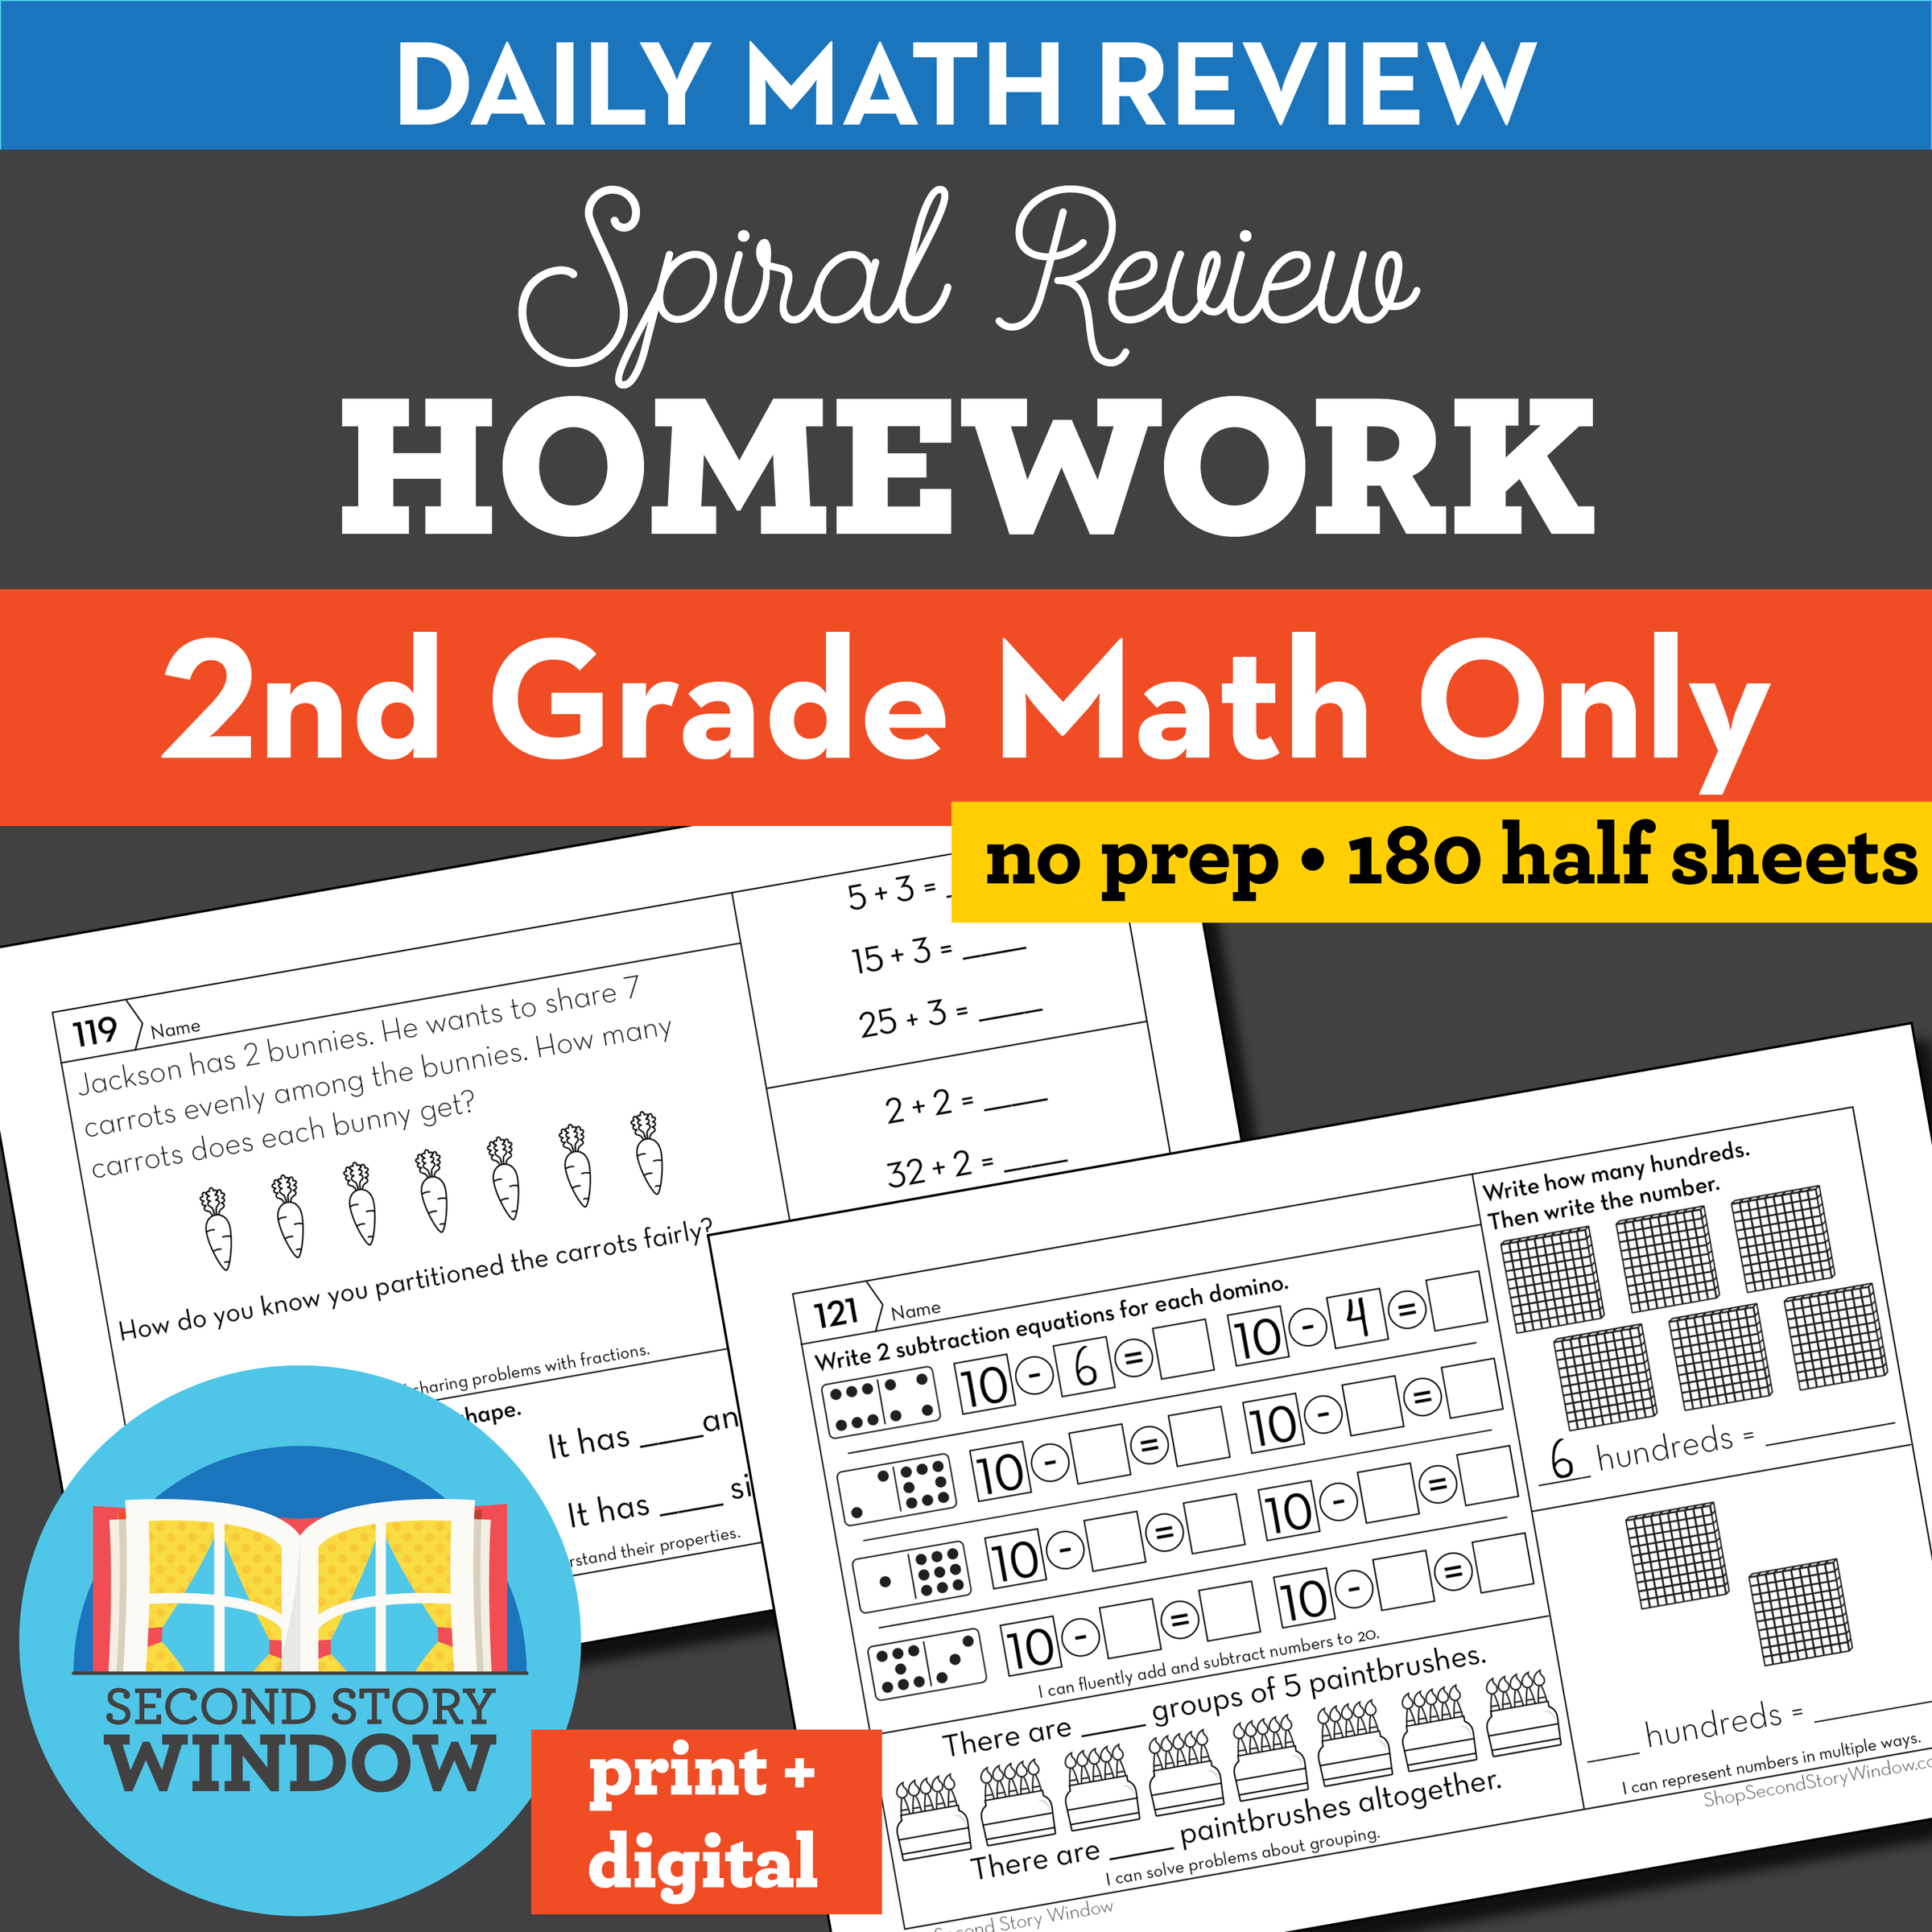 homework review 22